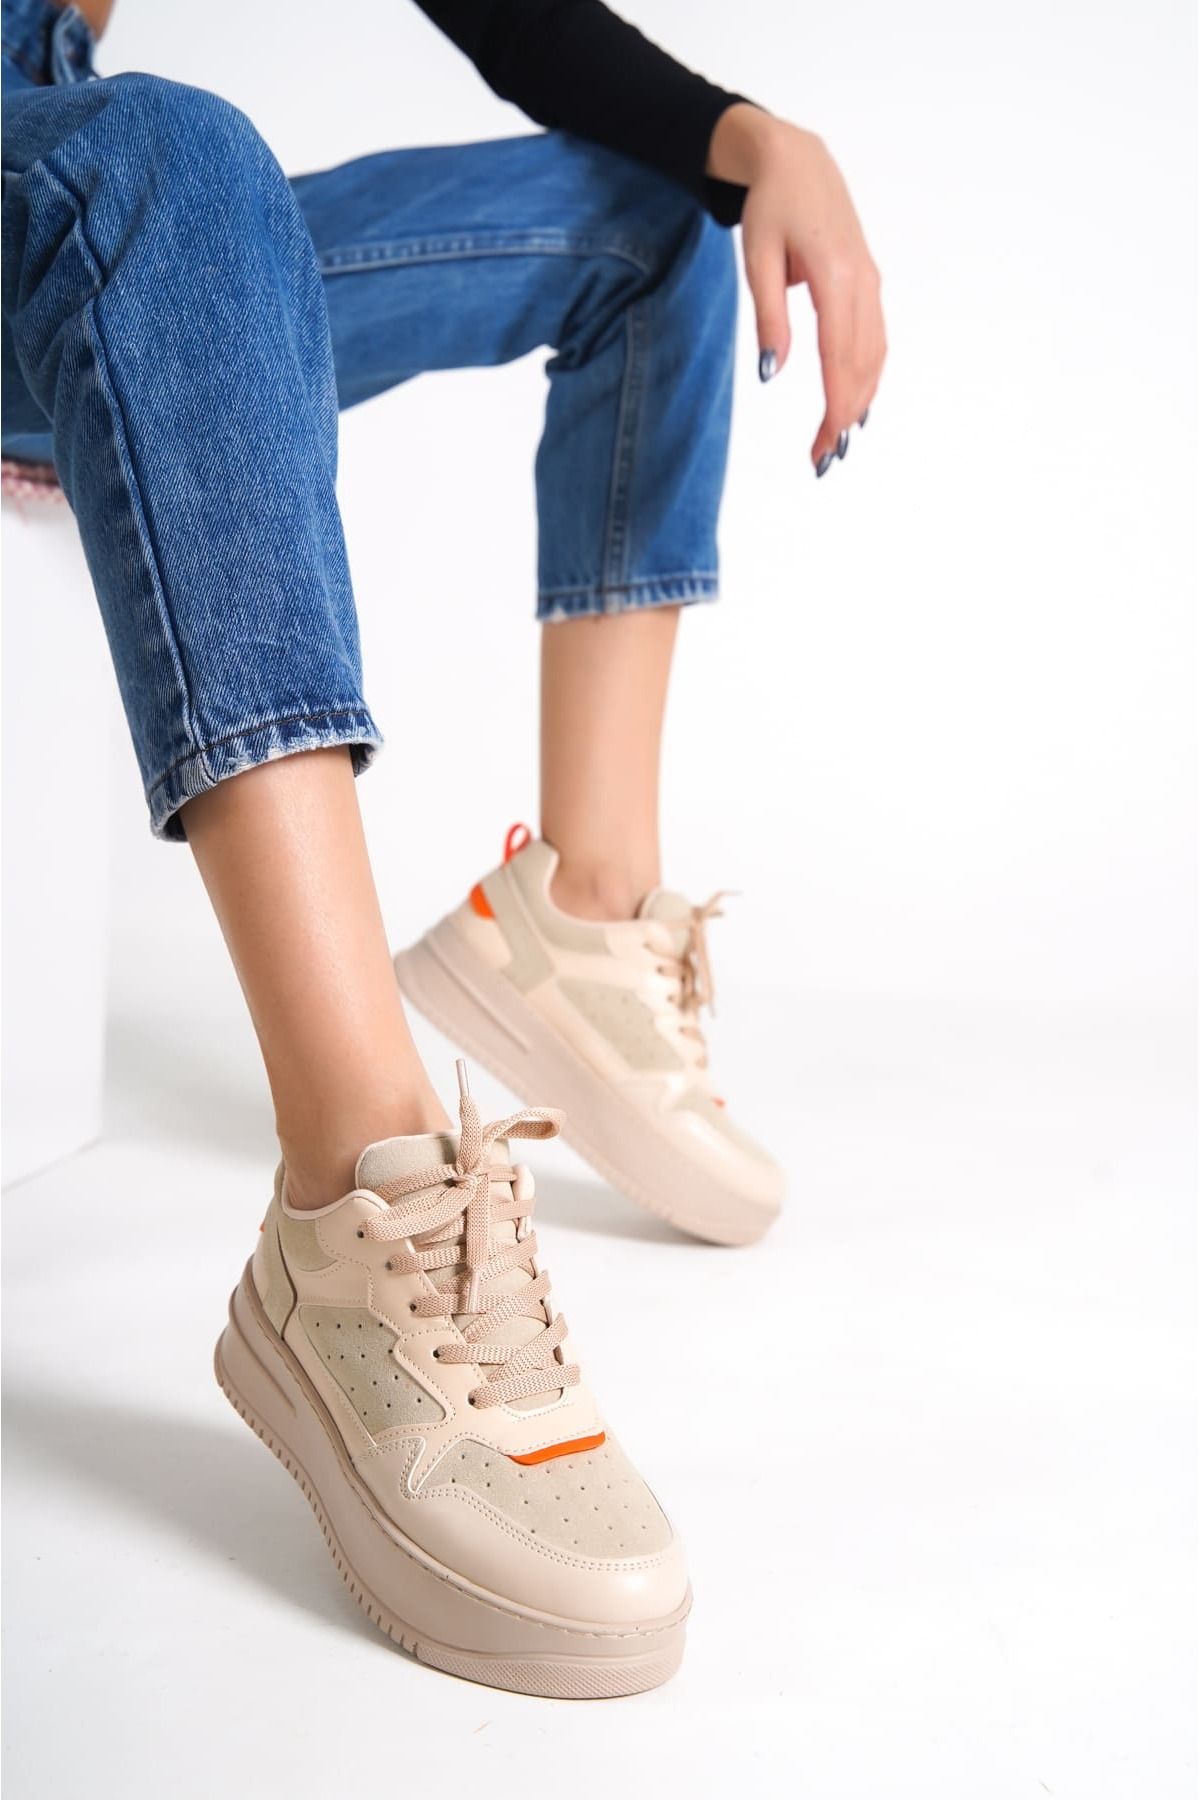 Mardel Store Bağcıklı Ortopedik Taban Kadın Sneaker Ayakkabı TT Ten Turuncu